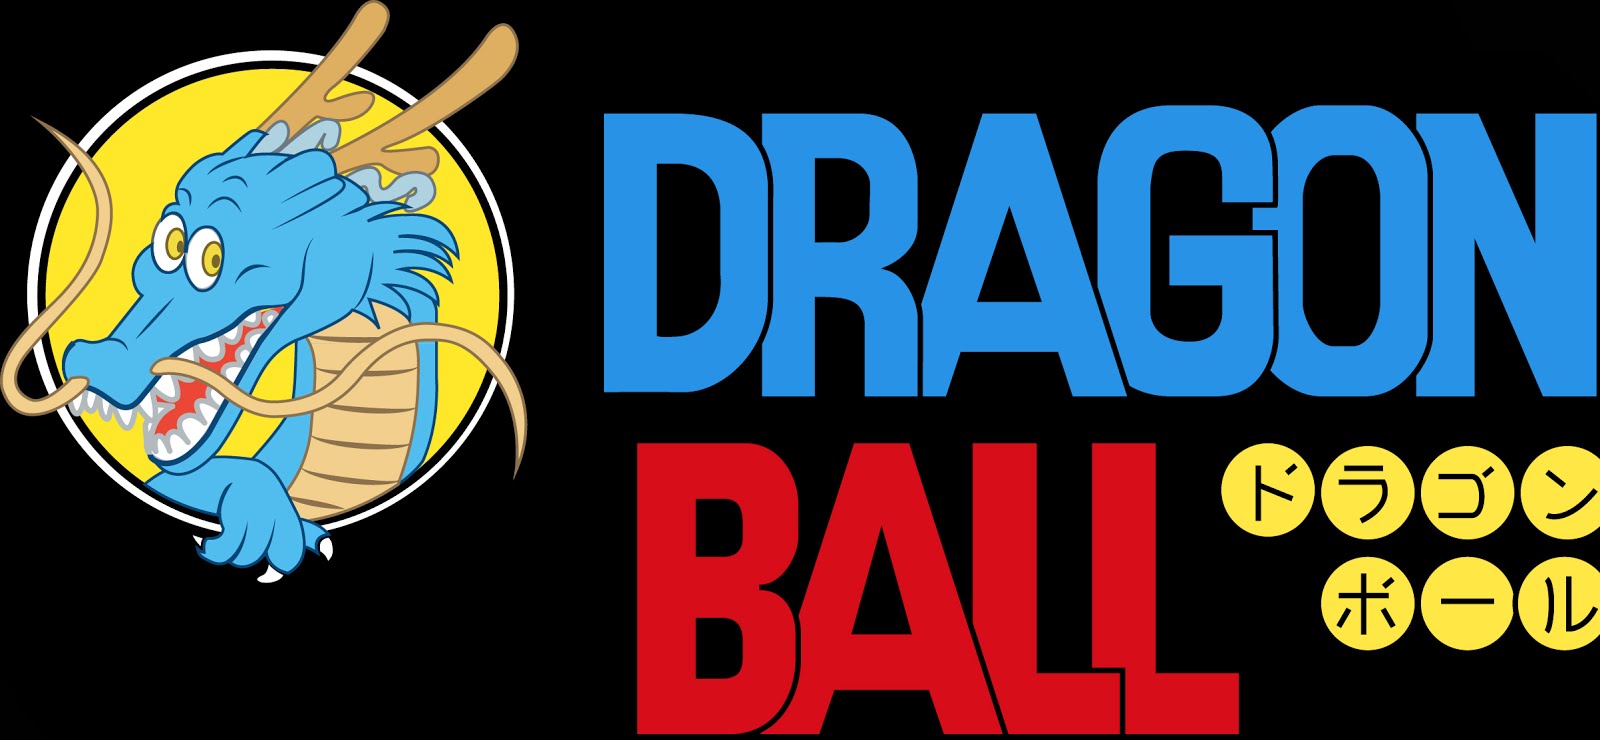 Drago ball